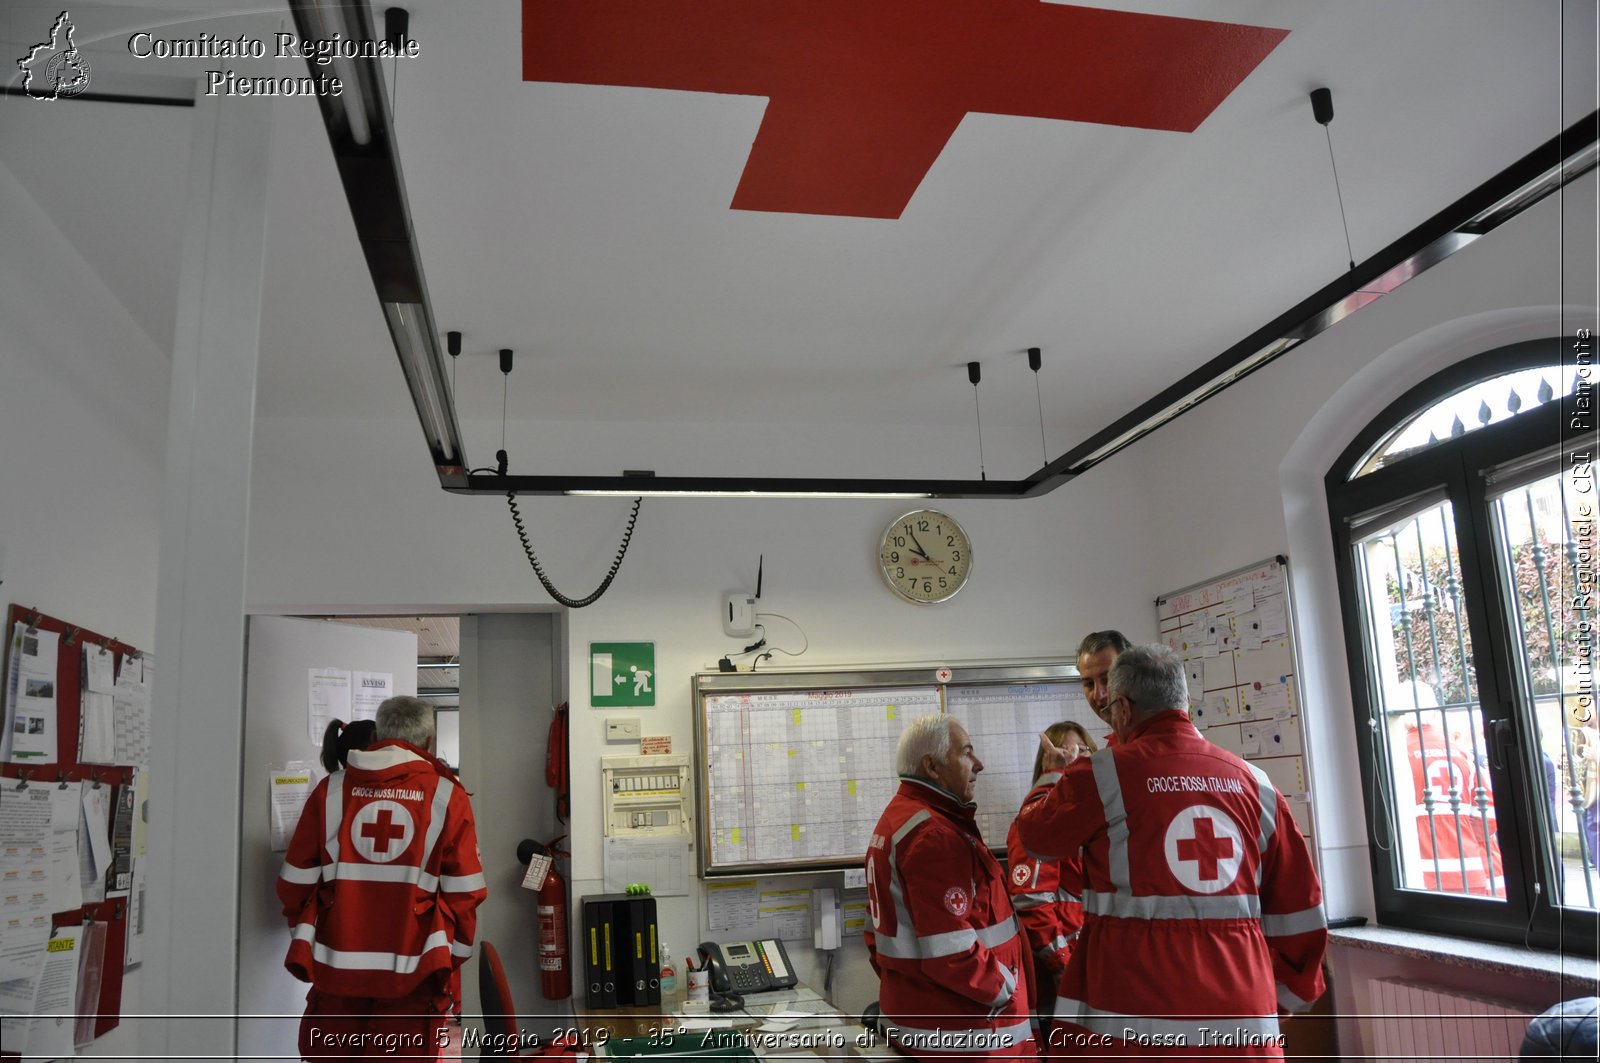 Peveragno 5 Maggio 2019 - 35 Anniversario di Fondazione - Croce Rossa Italiana - Comitato Regionale del Piemonte